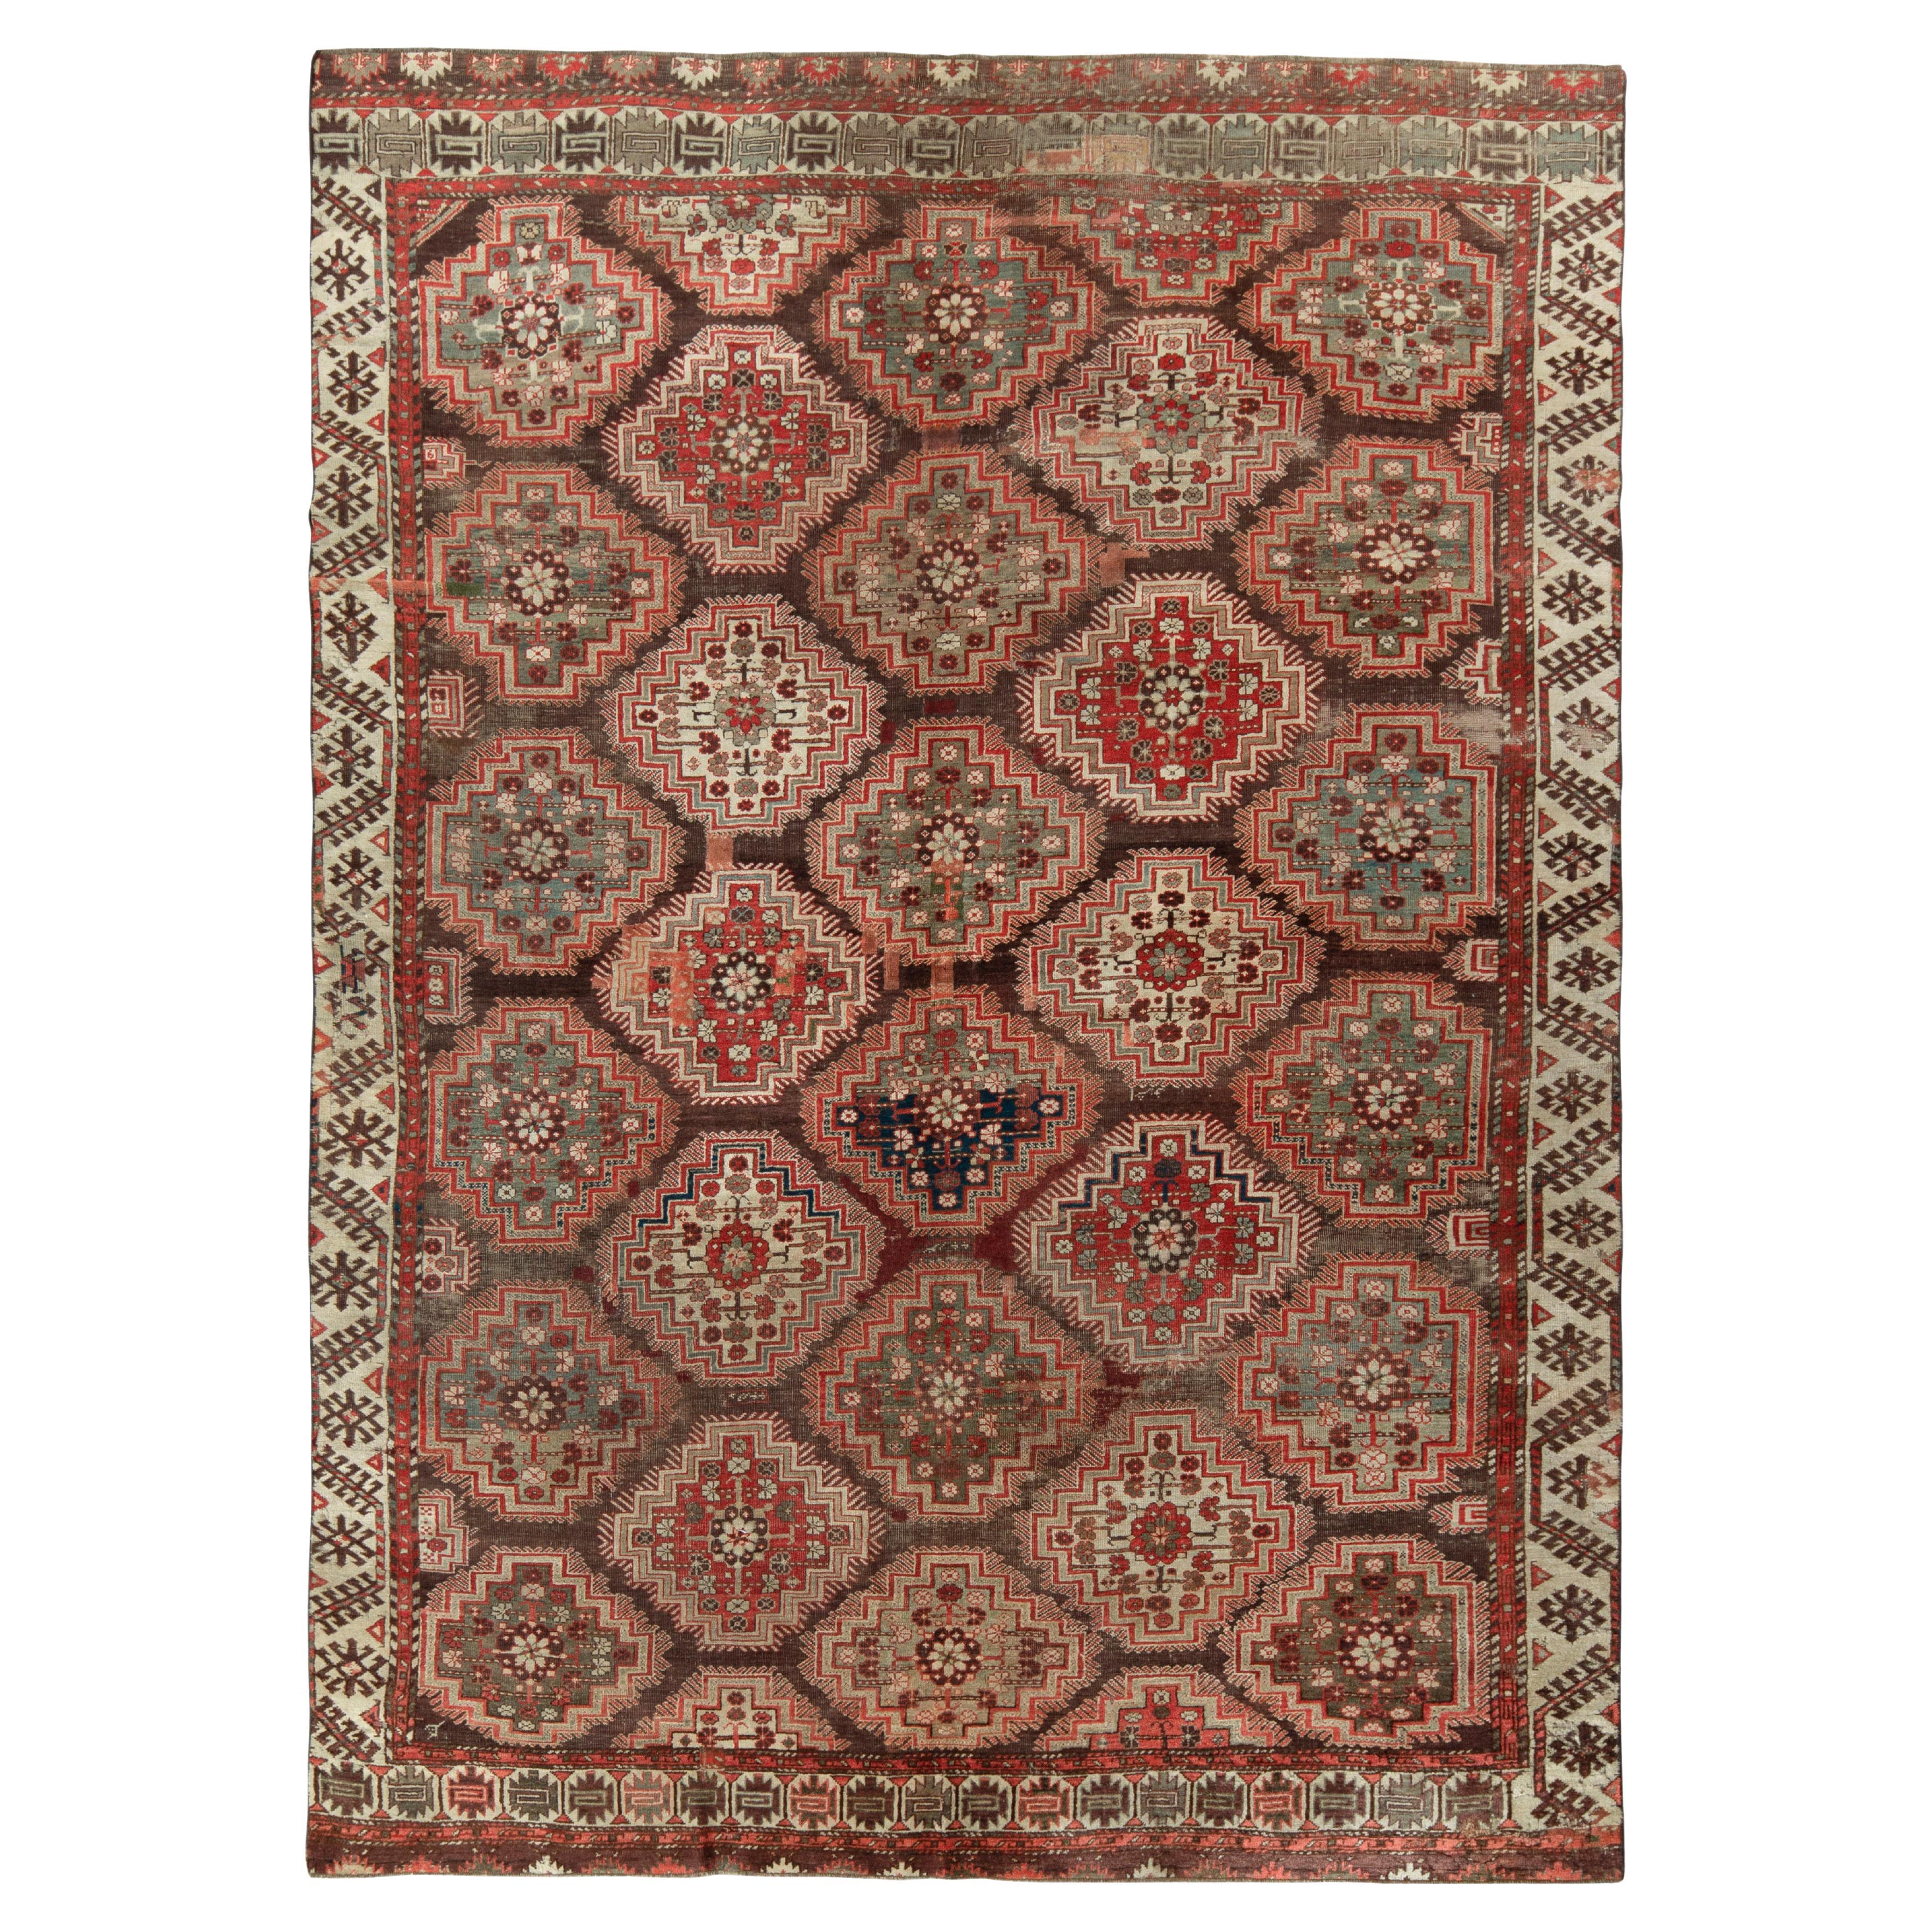 Antiker russischer Kuba-Teppich in Rot und Braun mit geometrischem Muster von Teppich & Kelim